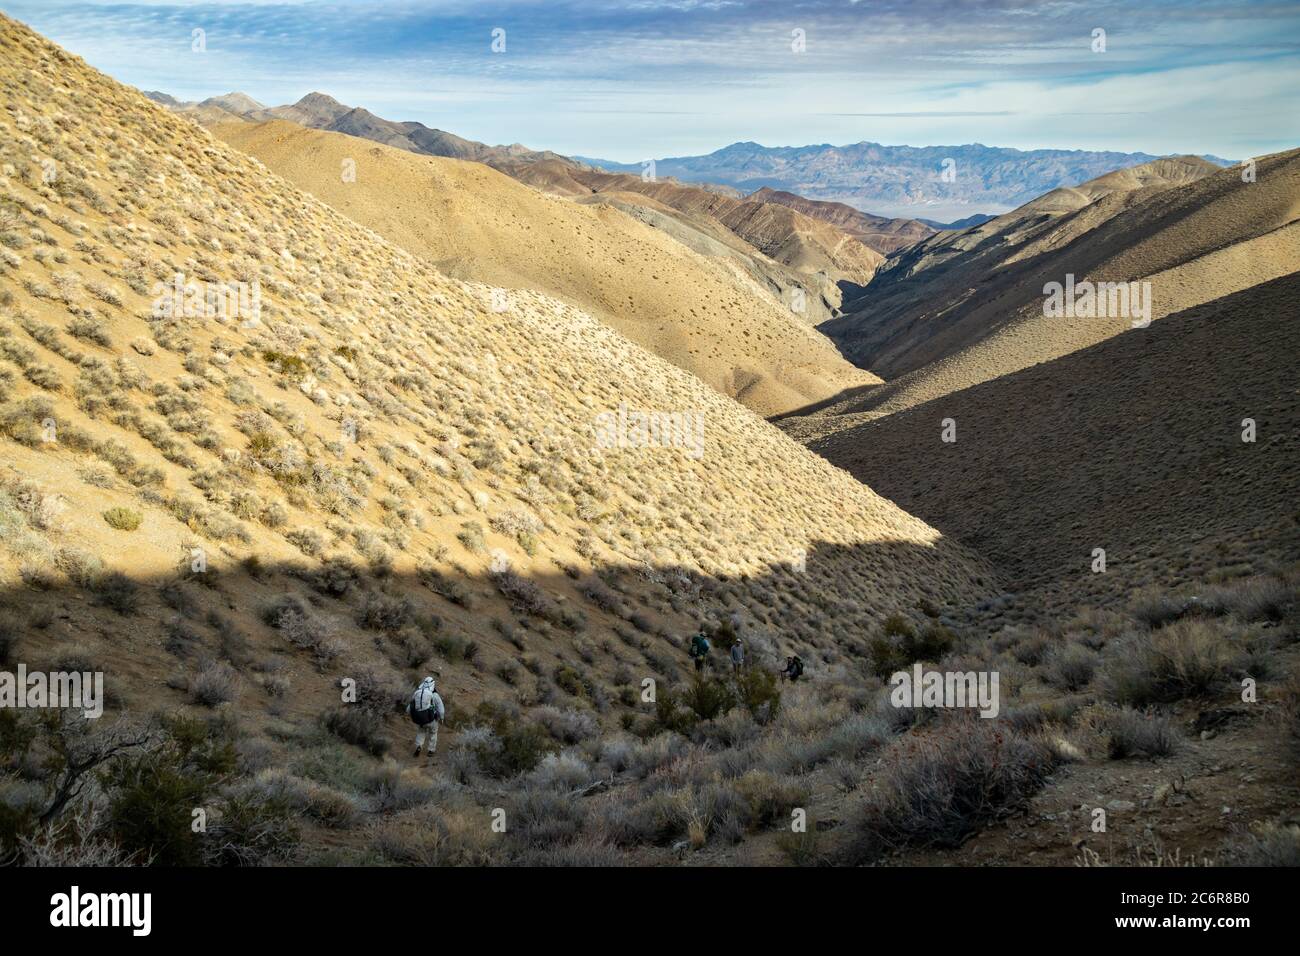 Cuatro excursionistas masculinos descienden al cañón Deadhorse, parte del circuito de excursionismo de Cottonwood Canyon-Marble Canyon en el Parque Nacional del Valle de la muerte Foto de stock